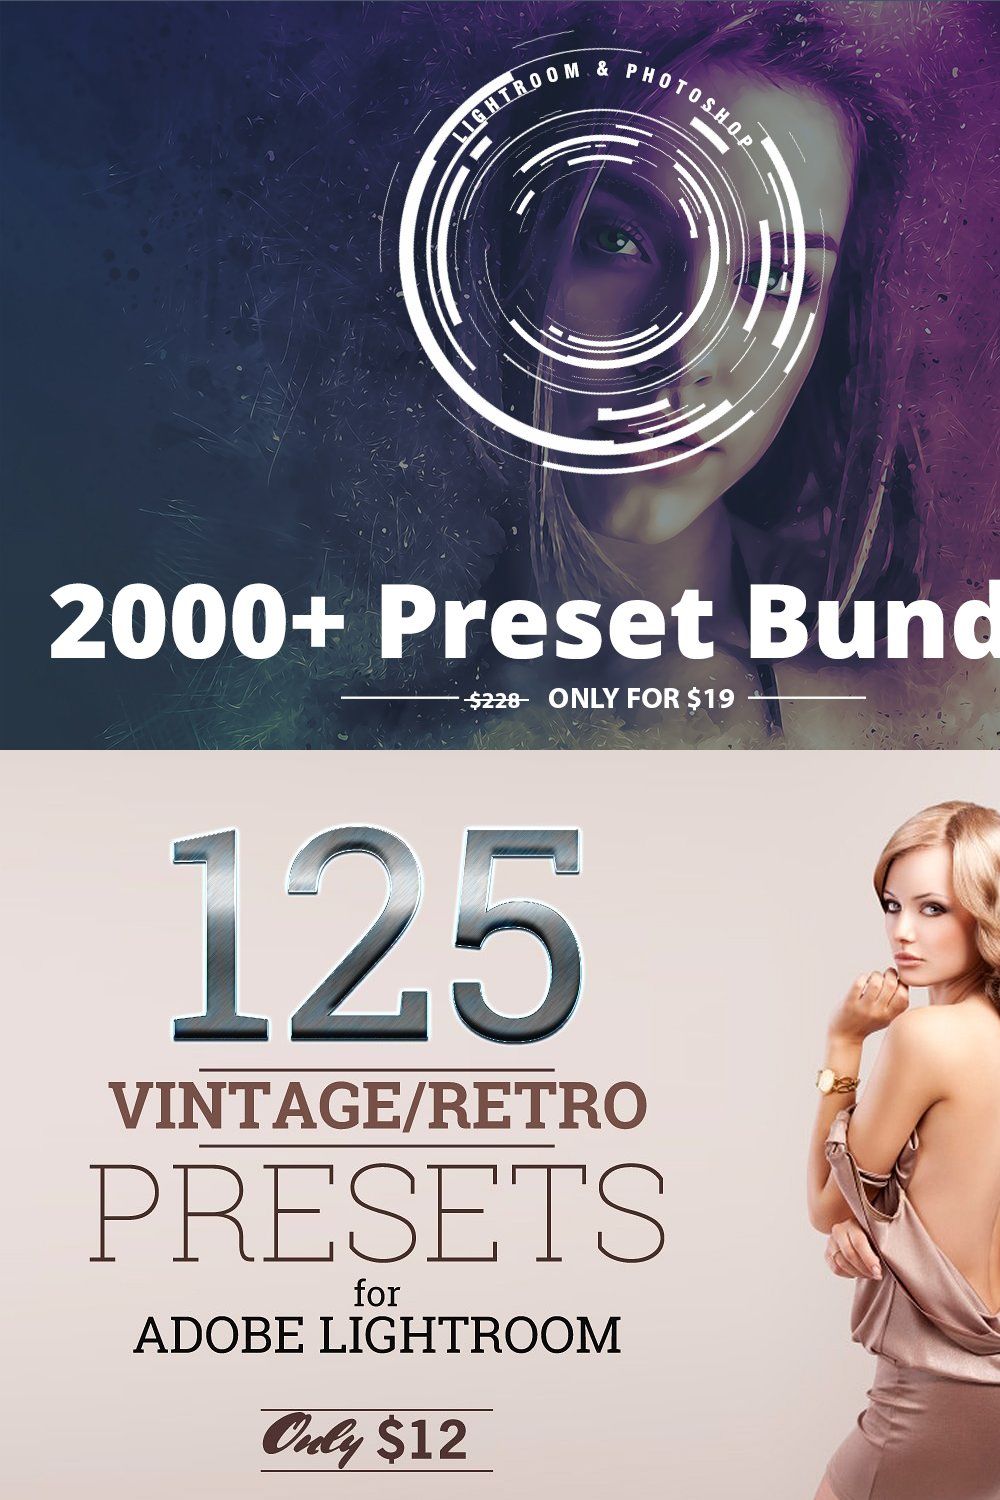 2000+ Lightroom Preset Bundle pinterest preview image.